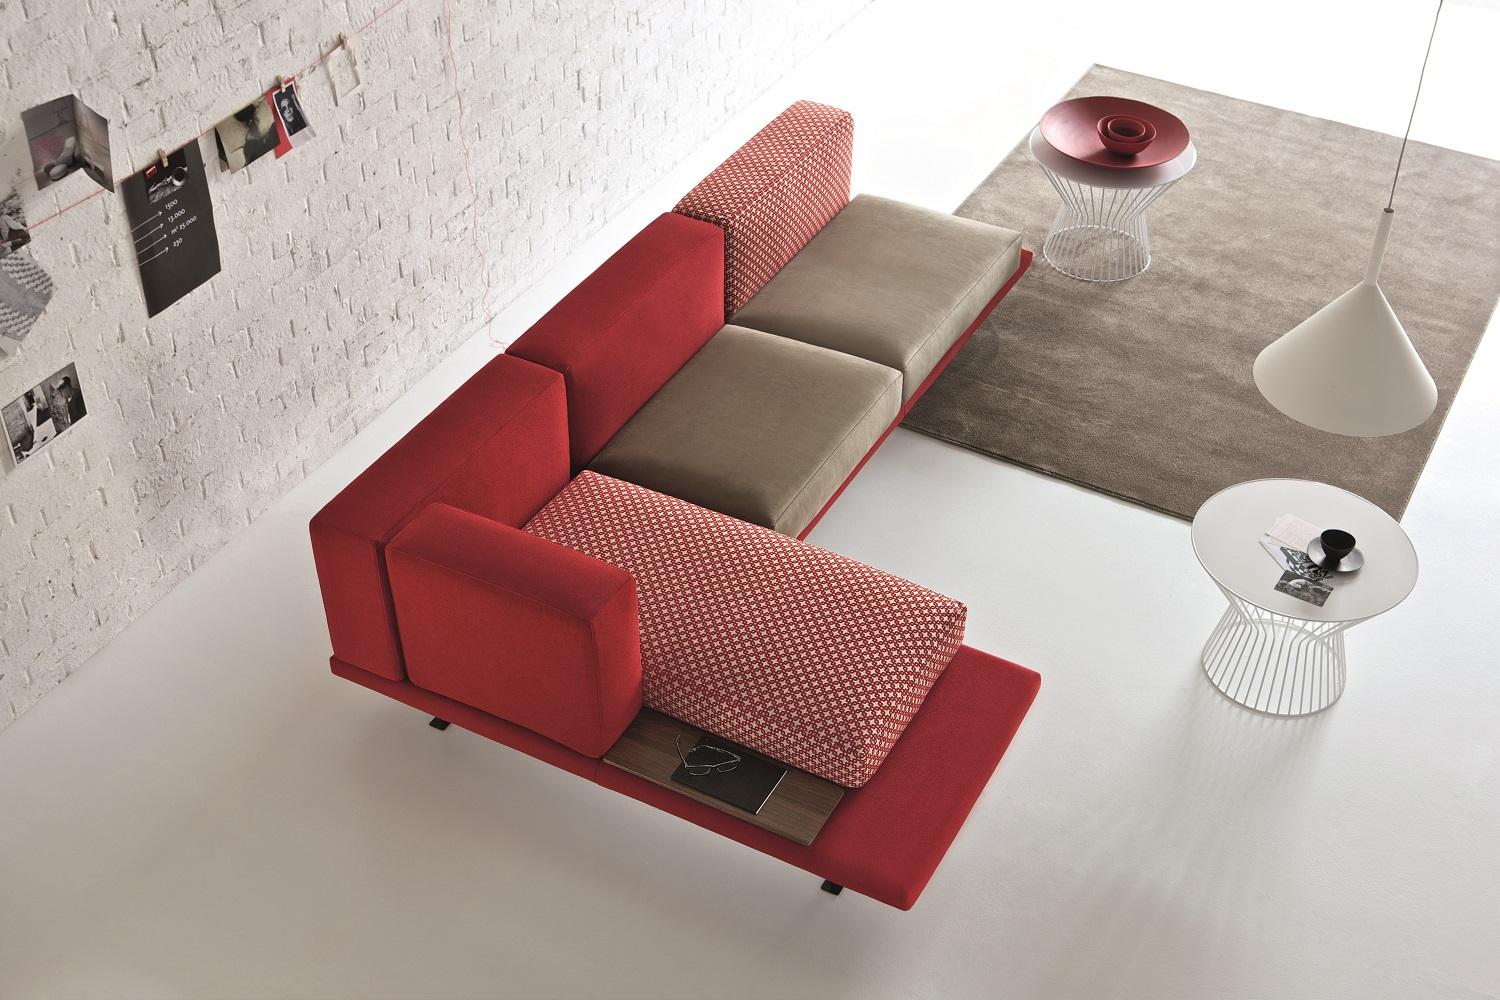 Il divano di design a prezzi contenuti lo produce Doimo